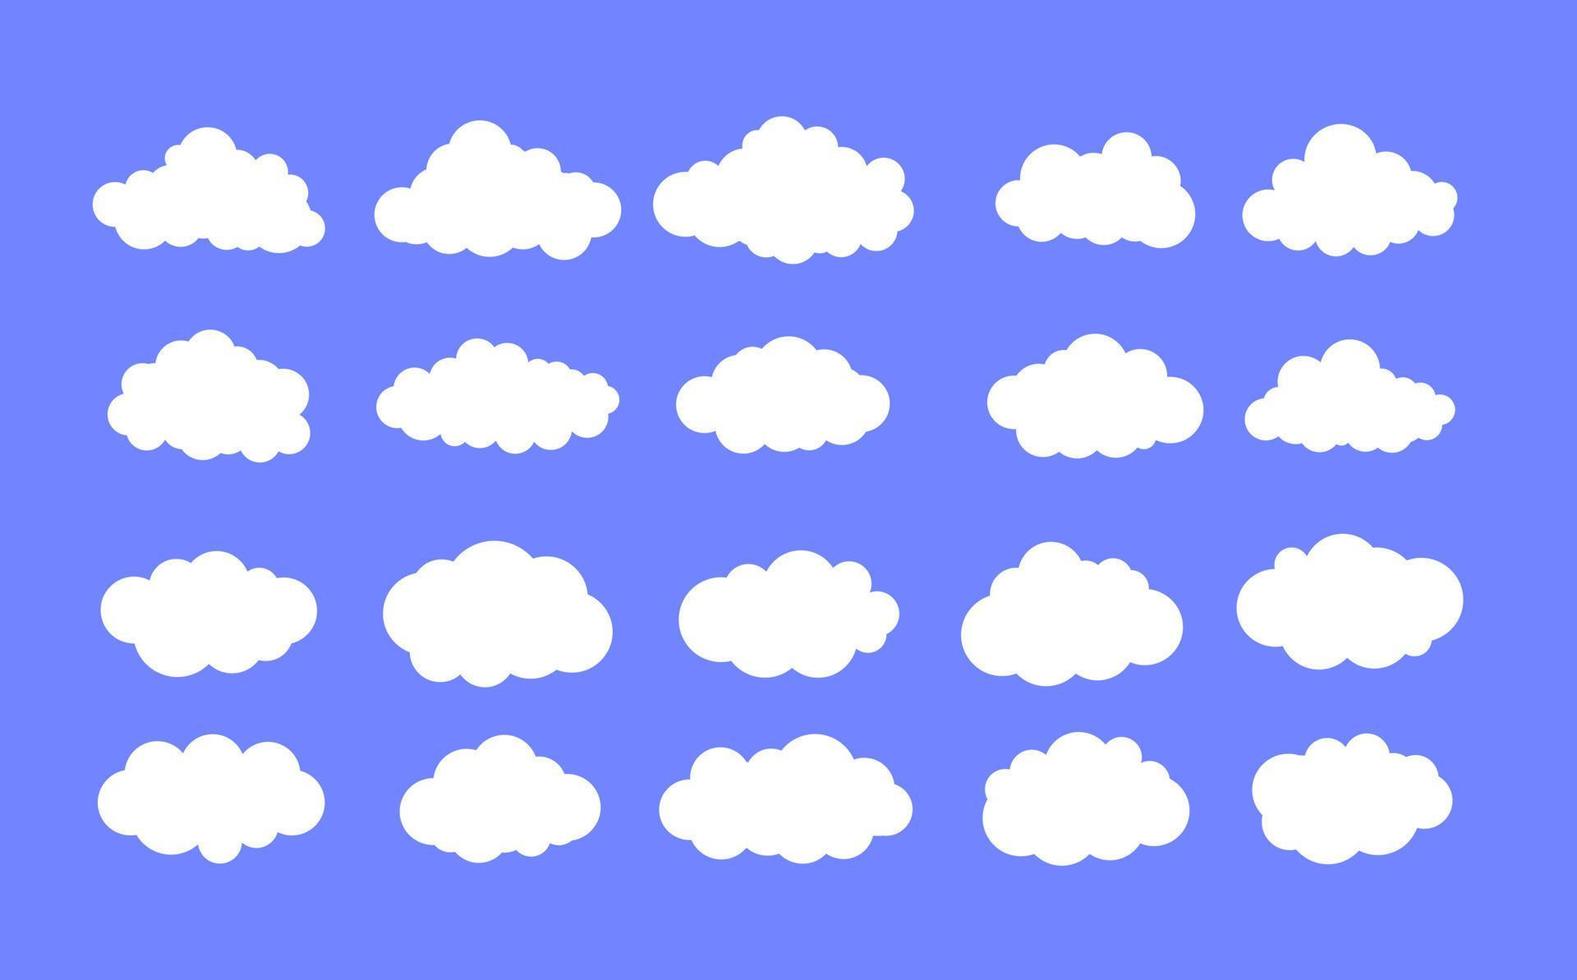 Symbolsatz für weiße Wolken vektor